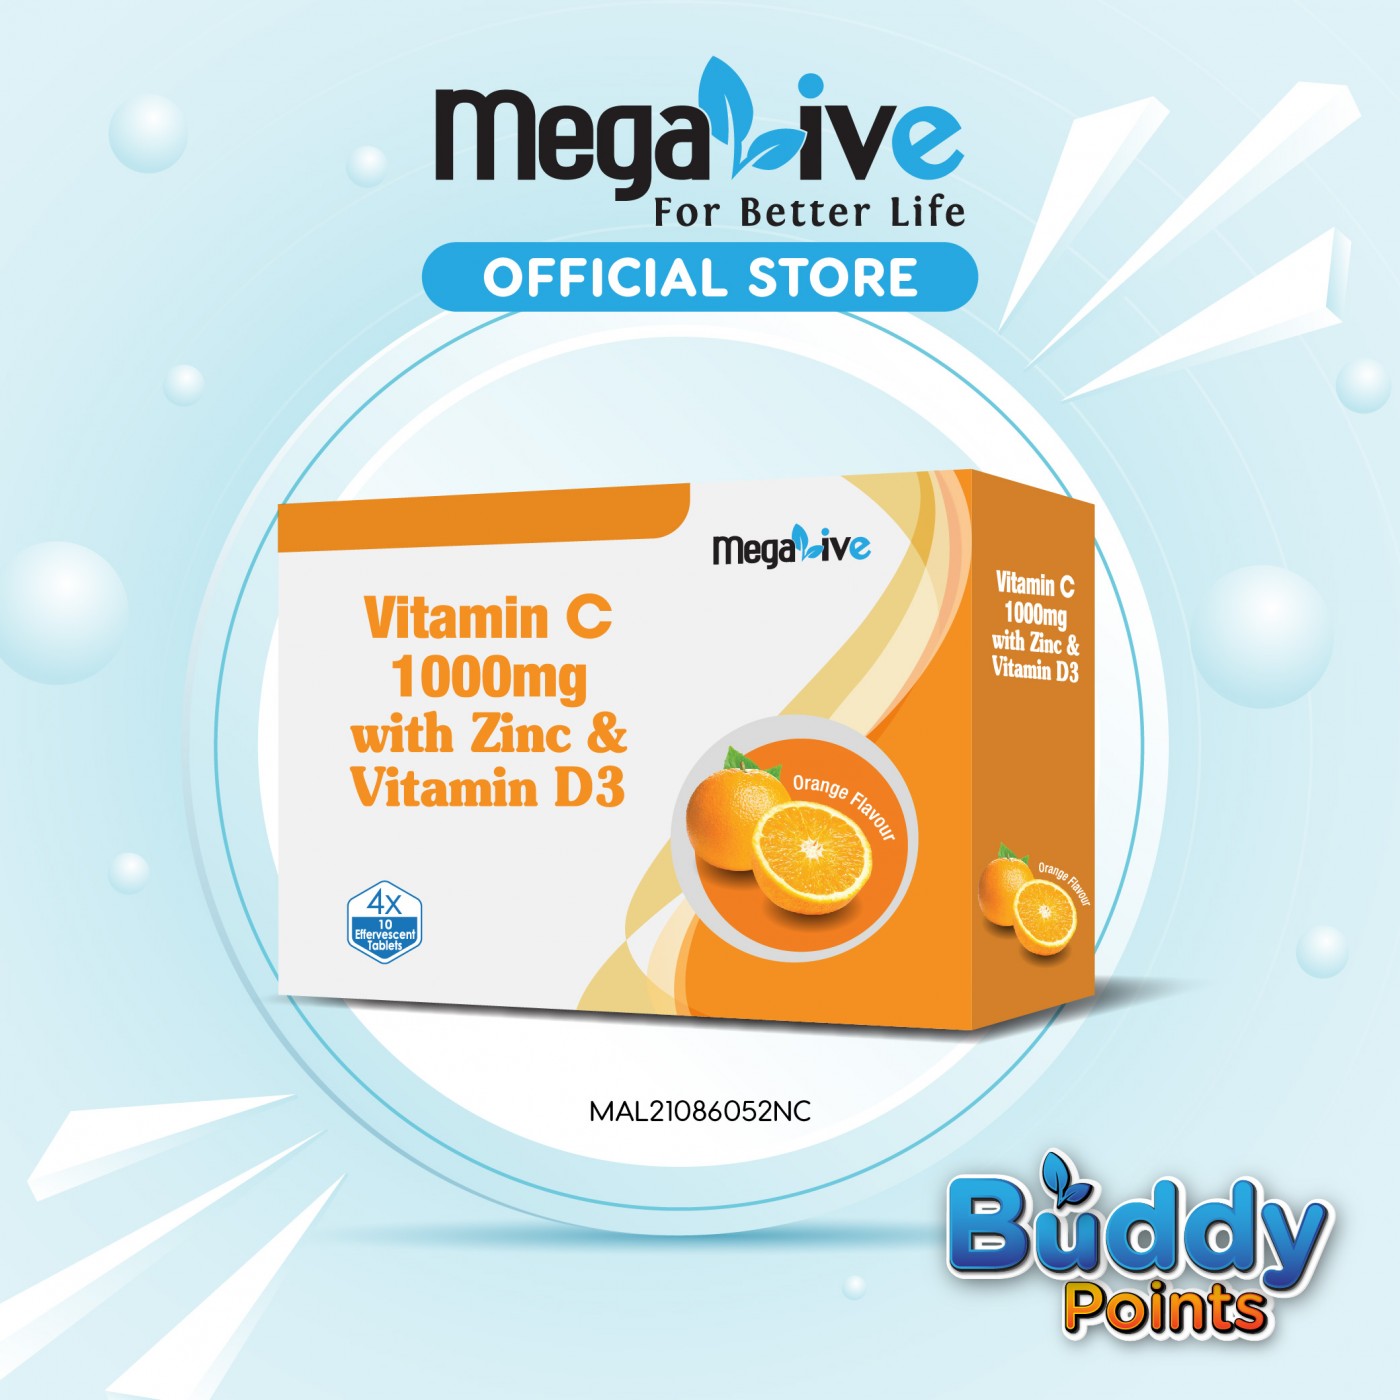 MegaLive Vitamin C 1000mg Effervescent Tablet